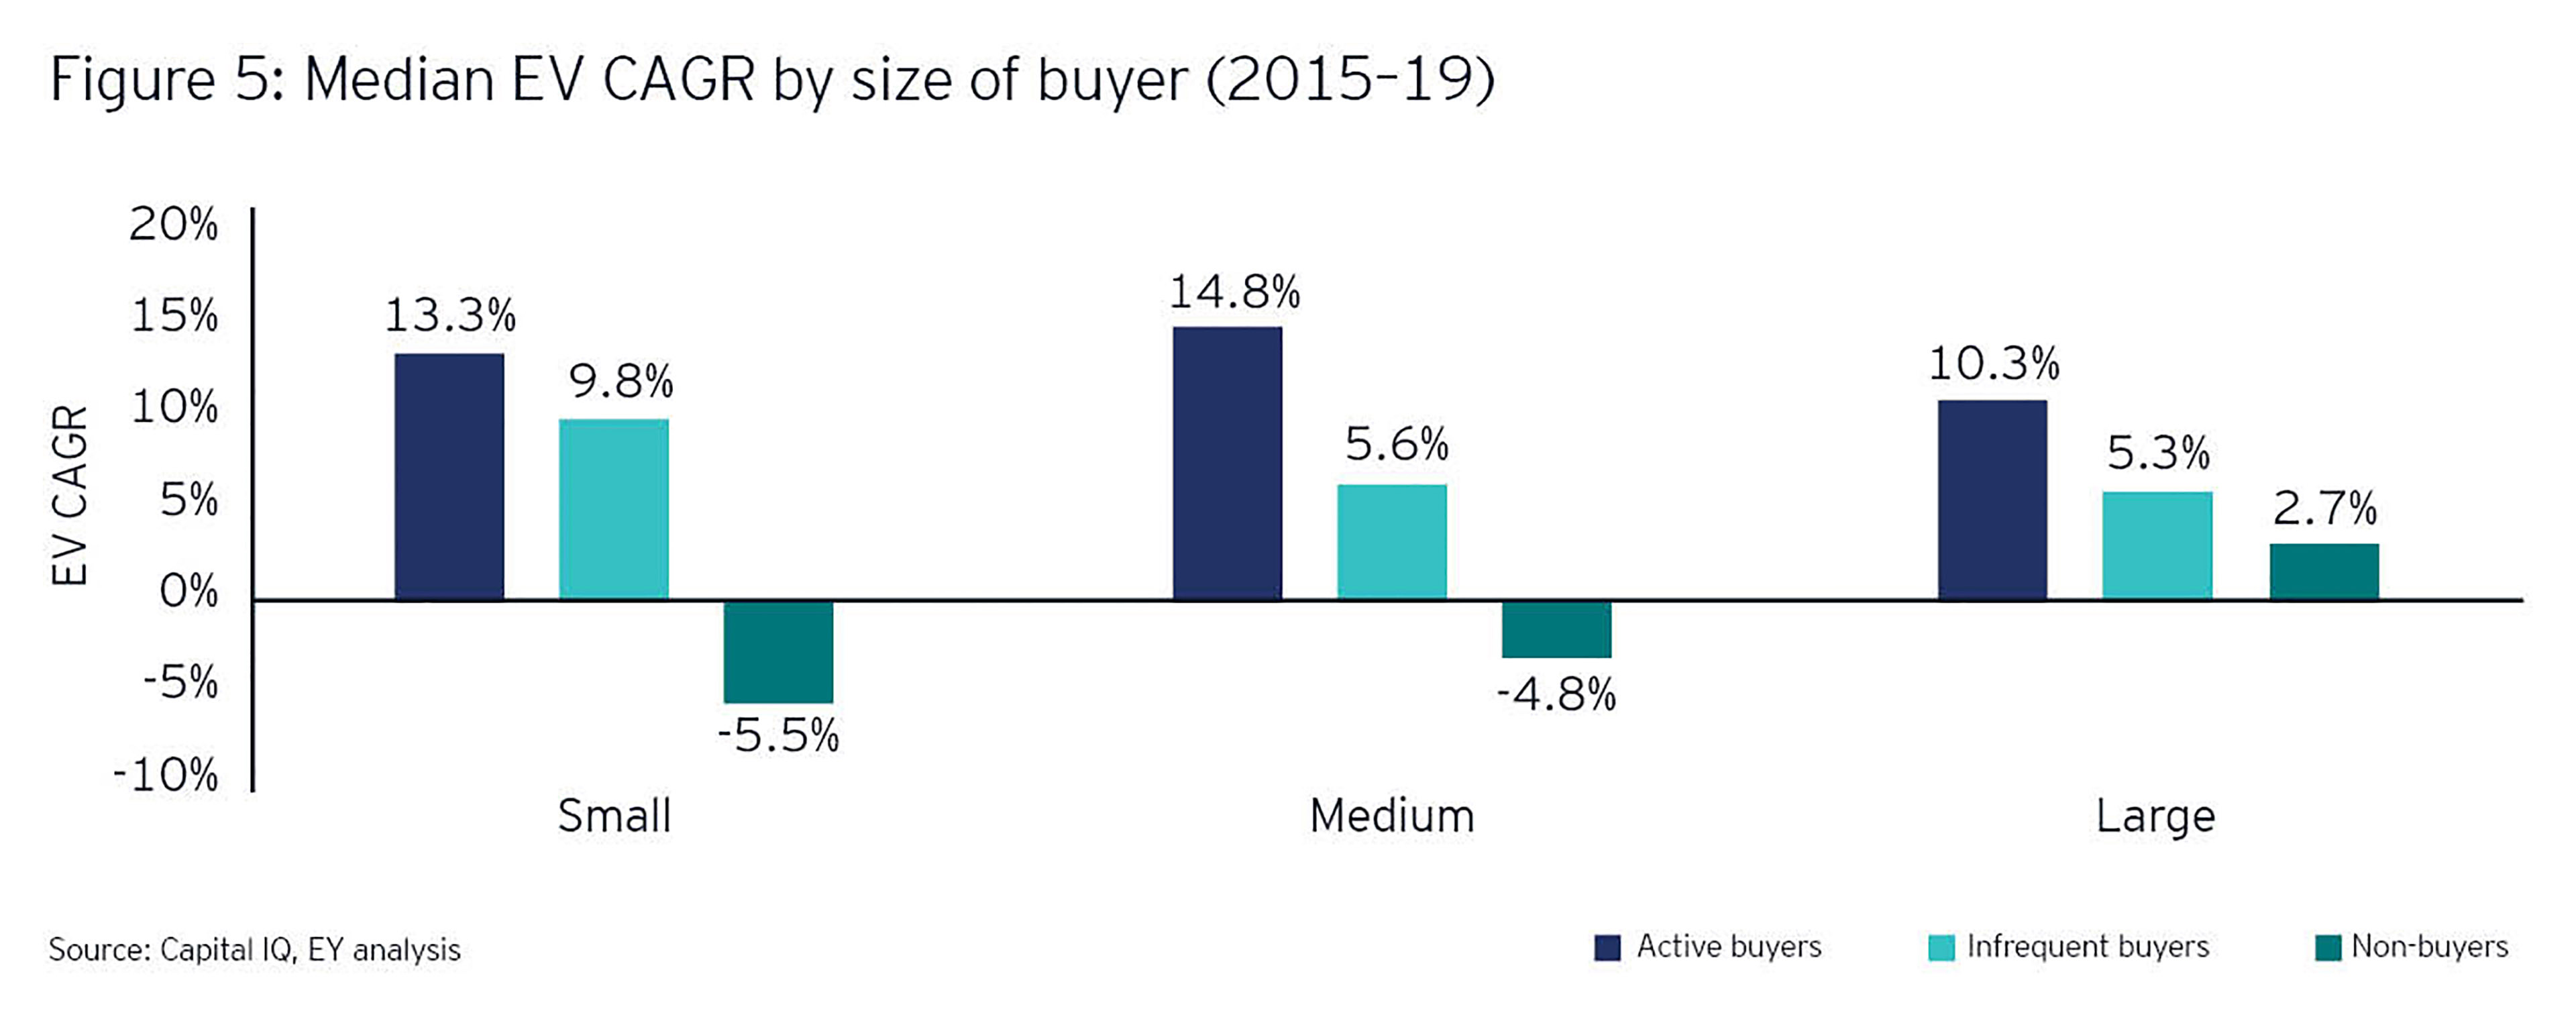 Median EV CAGR by size of buyer